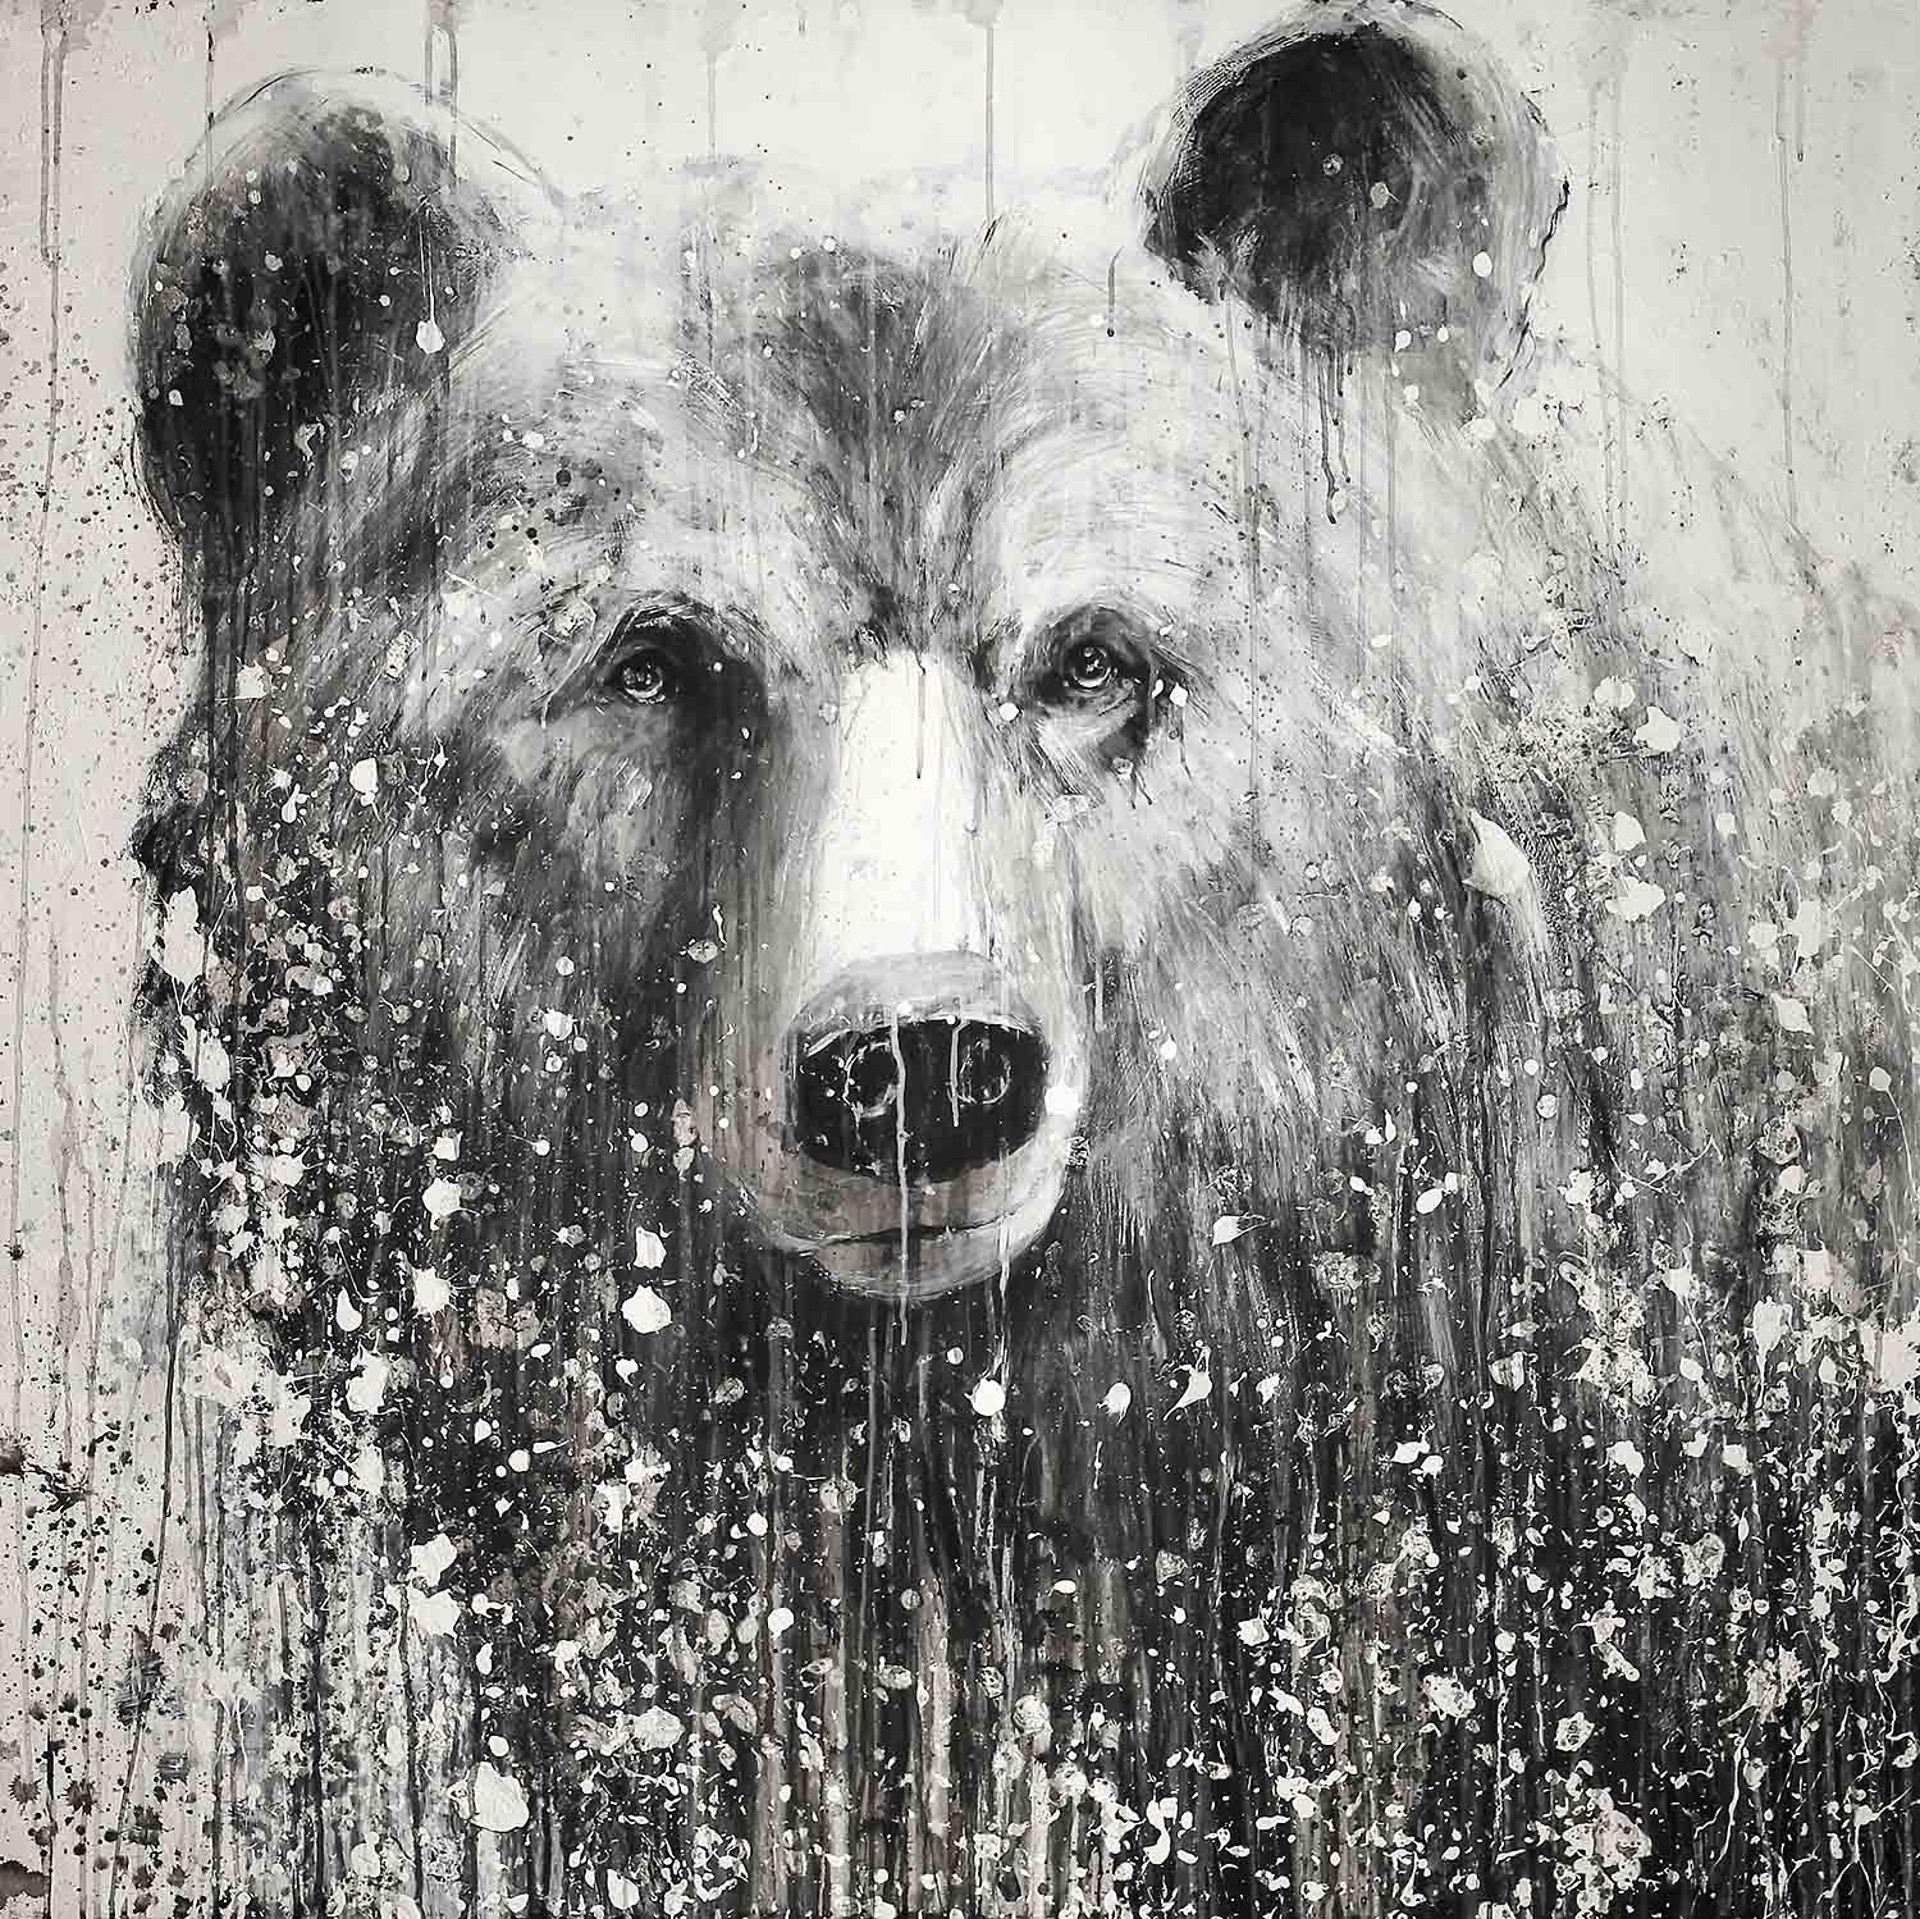 This One Bear by Matt Flint